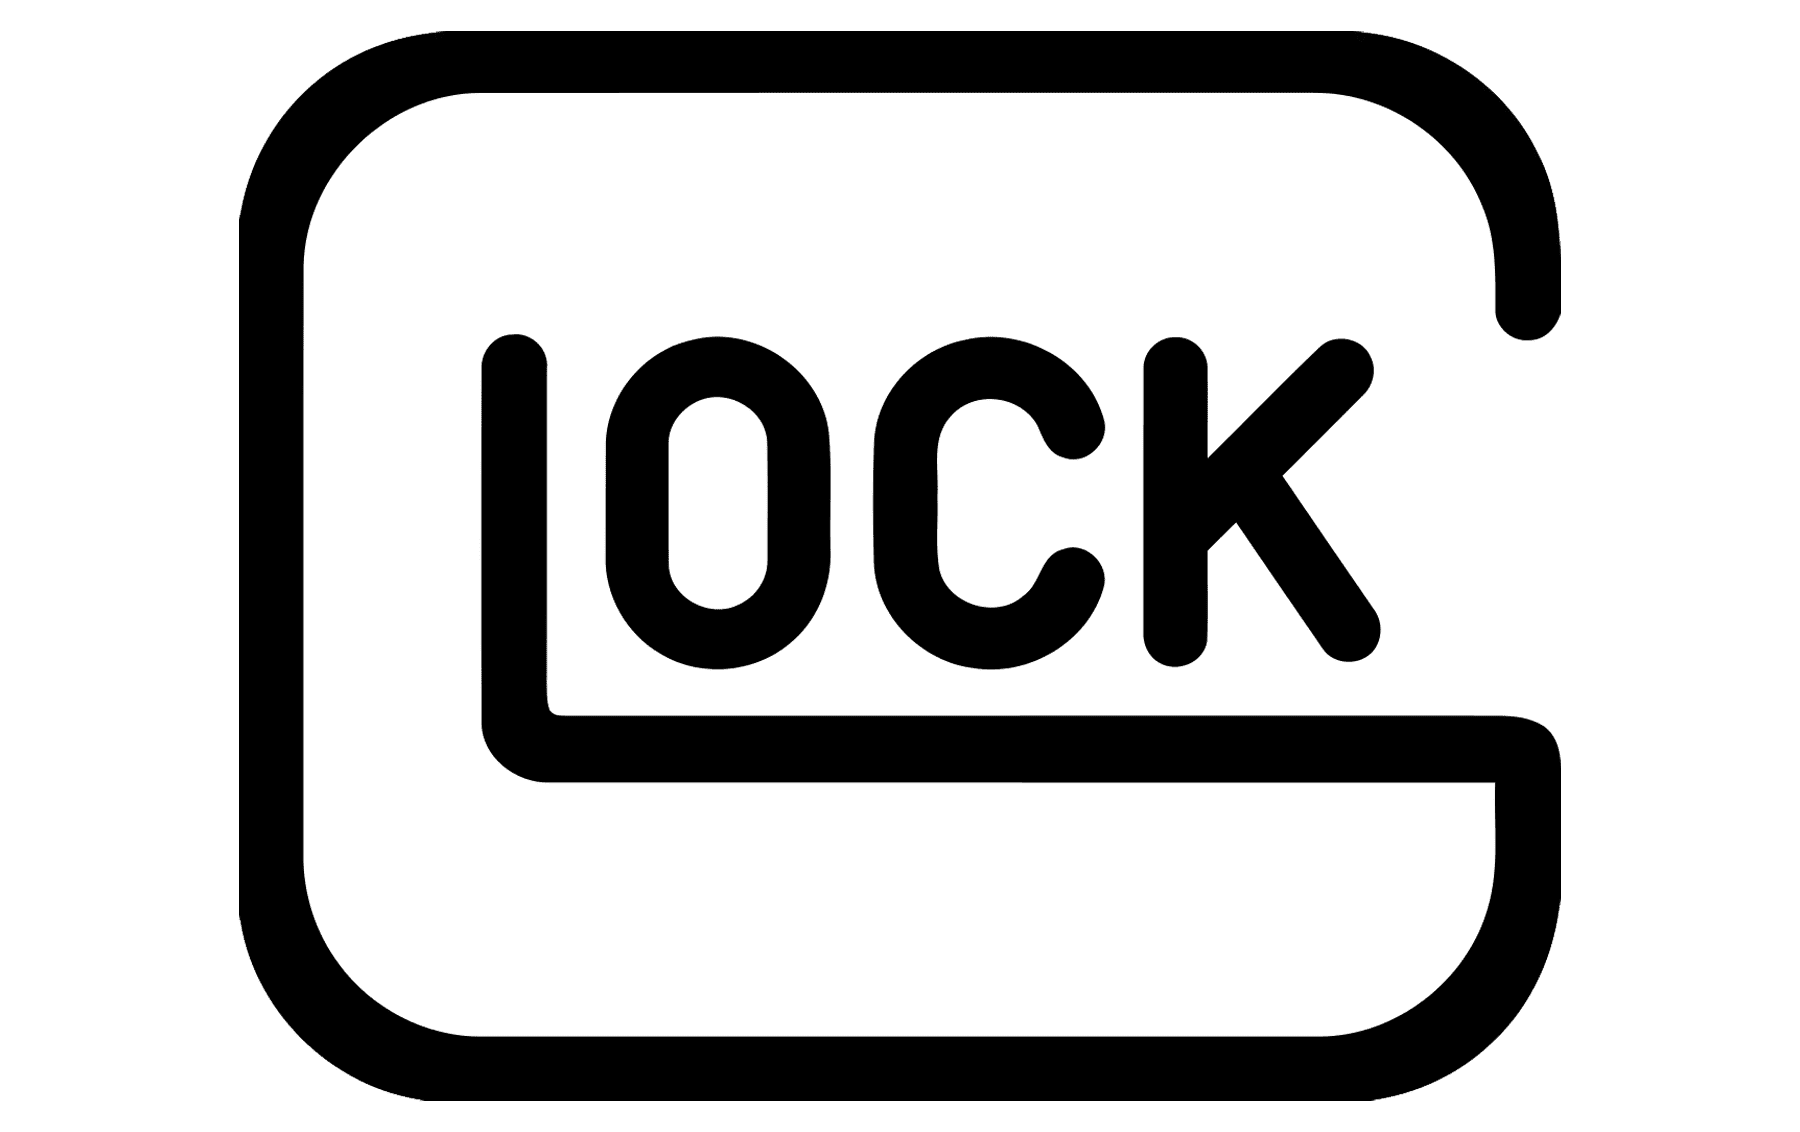 Glock_logo_PNG2